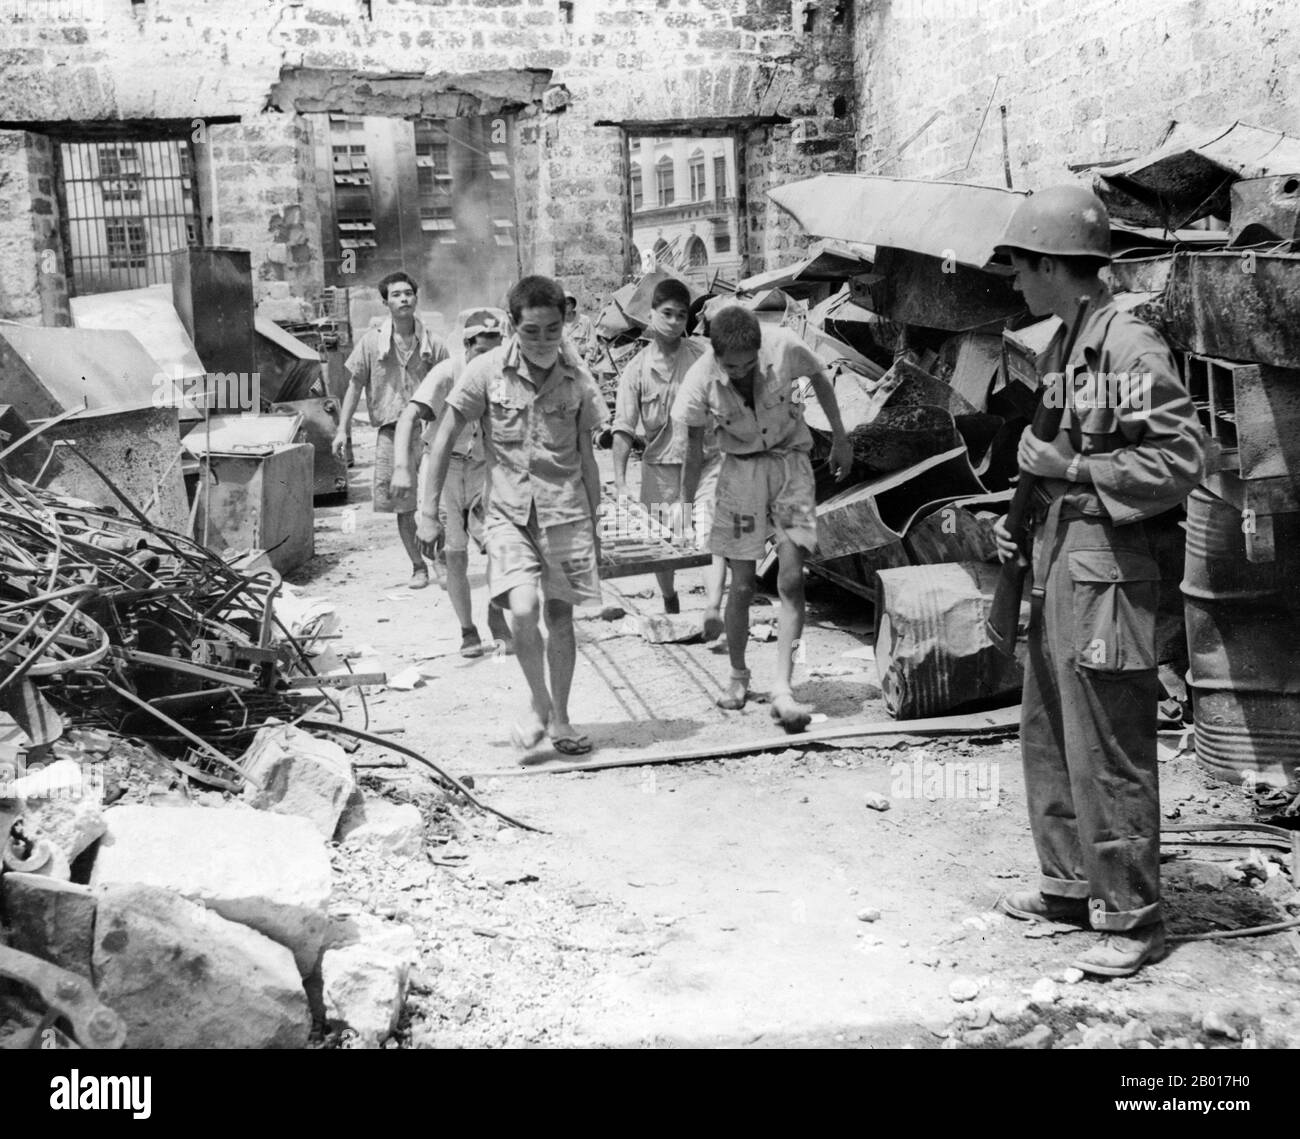 Filippine: Prigionieri di guerra giapponesi sotto la supervisione militare americana, 1945. Prigionieri di guerra giapponesi che aiutano nella pulizia massiccia dopo la battaglia di Manila nel 1945. Foto Stock